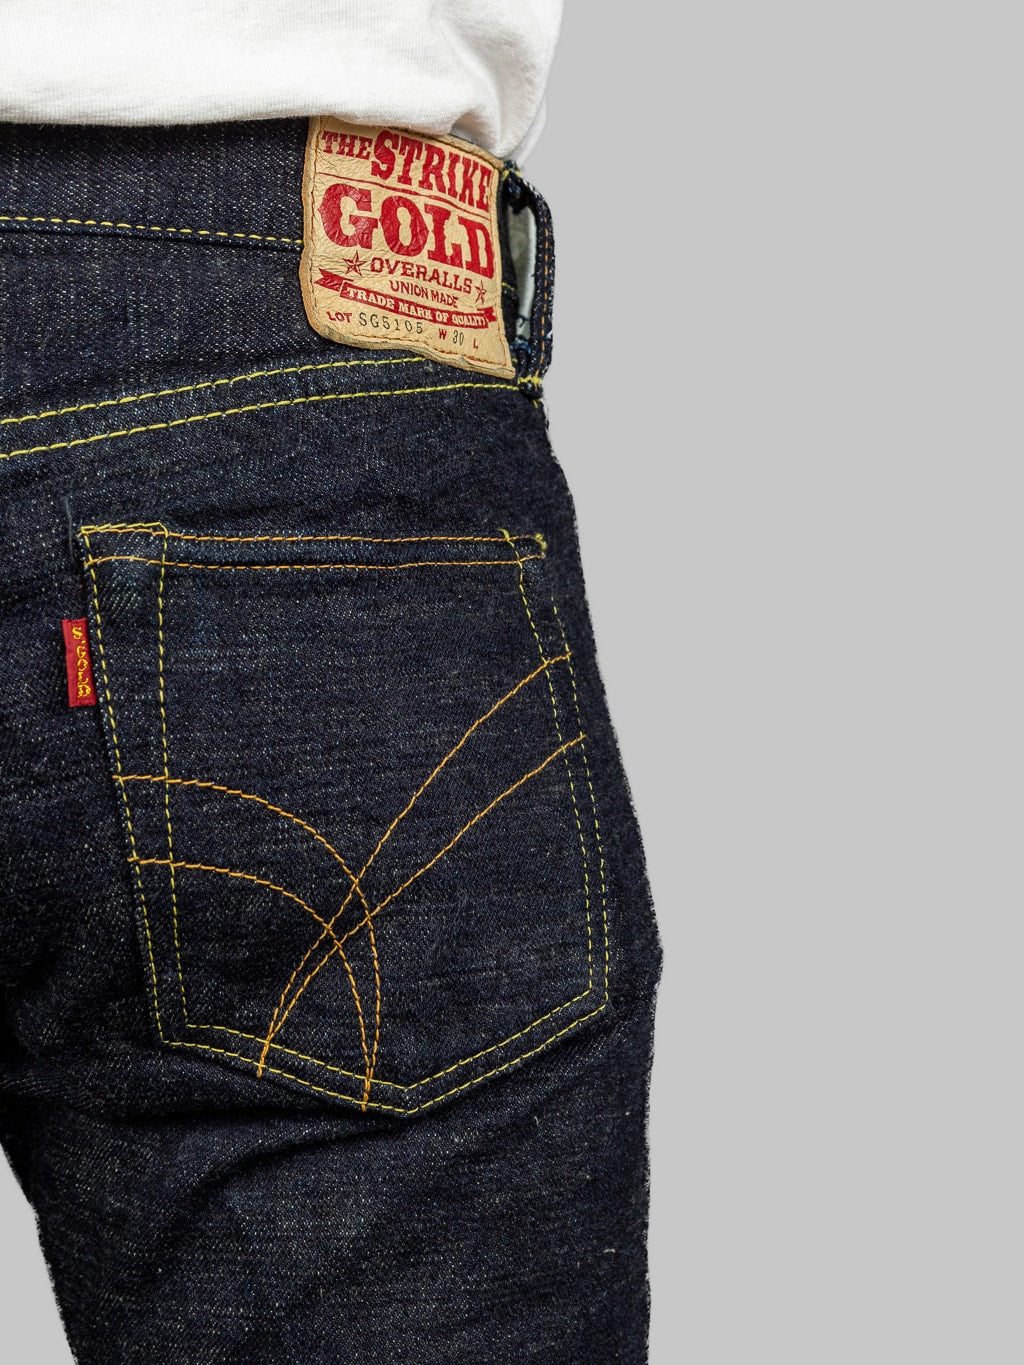 The Strike Gold Slub Weft Slim Jeans fit back pocket